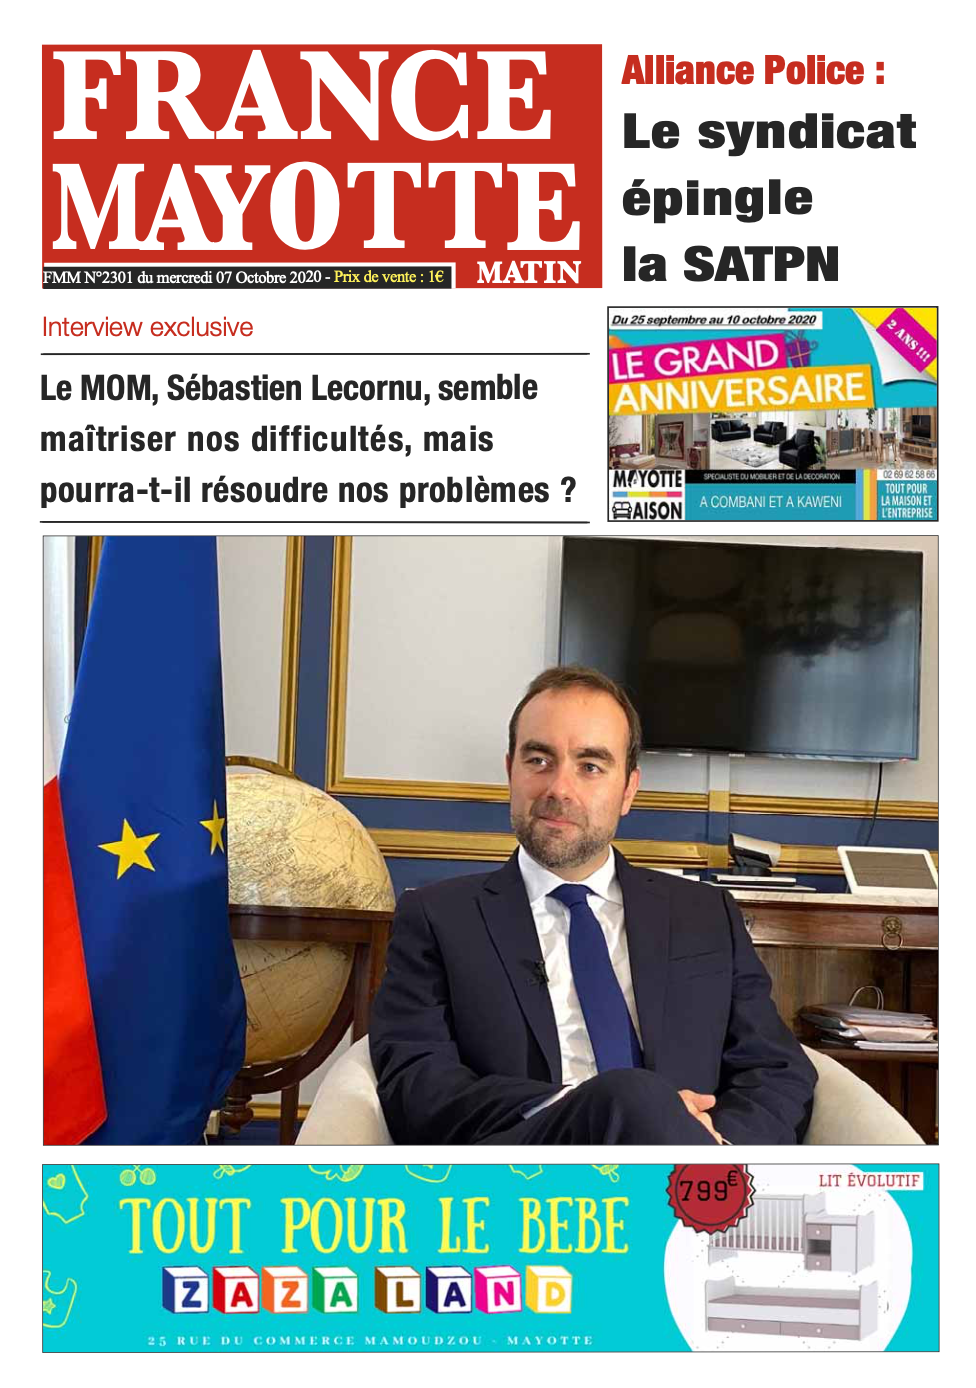 France Mayotte Mercredi 7 octobre 2020